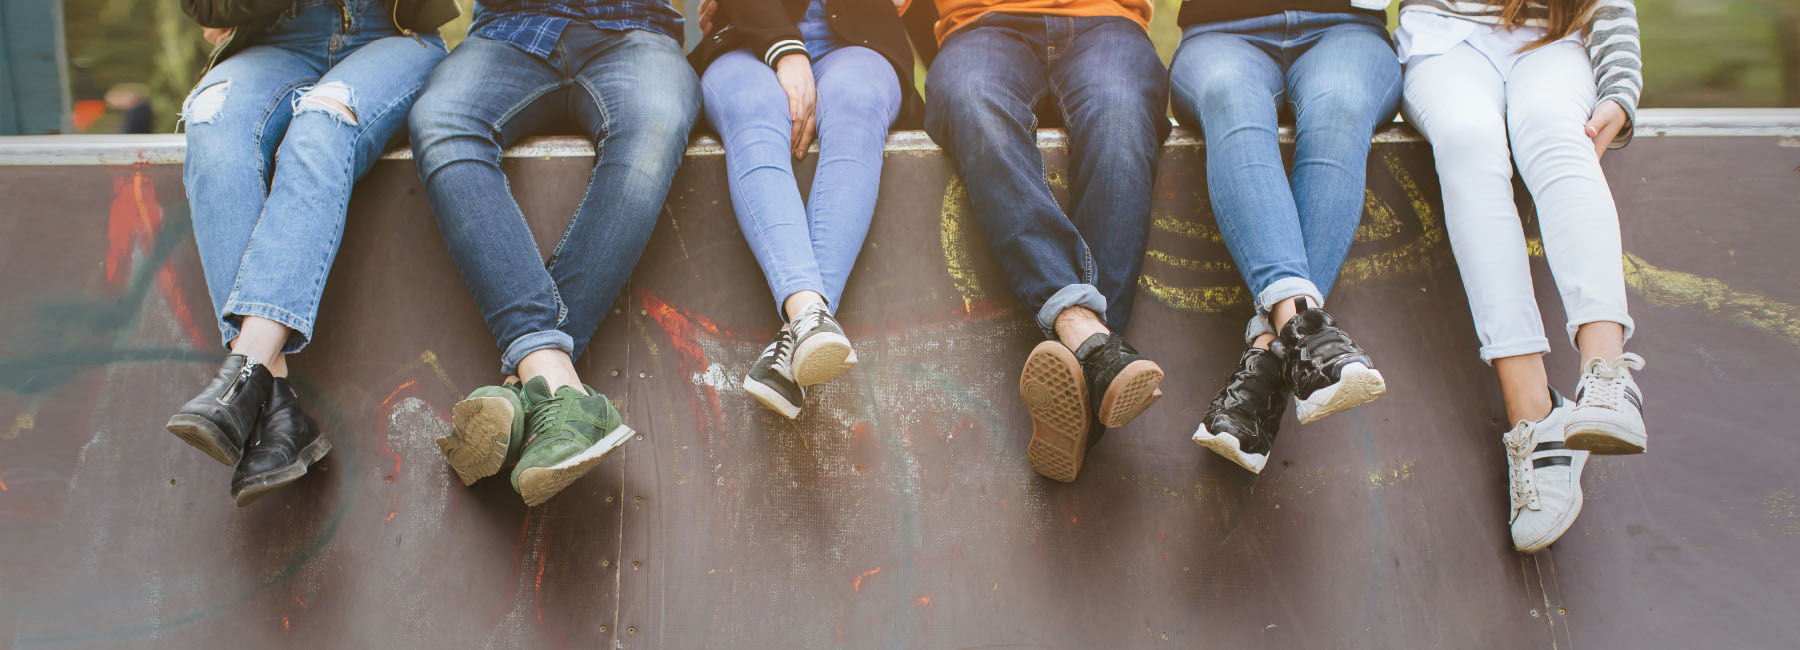 Les jambes de cinq jeunes assises sur un rebord de planchodrome